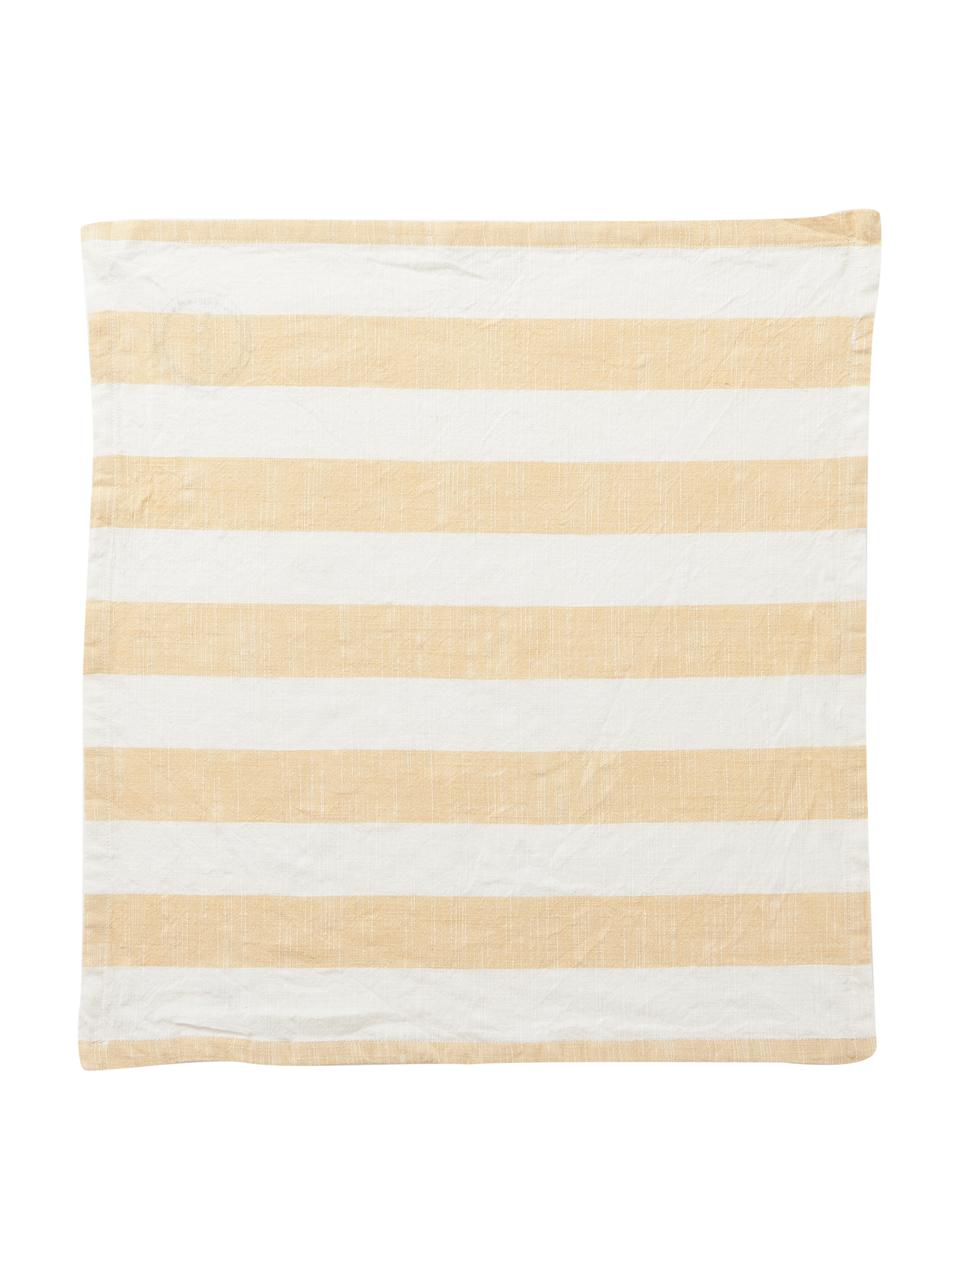 Serwetka z bawełny, 2 szt., 100% bawełna, Żółty, biały, S 45 x D 45 cm